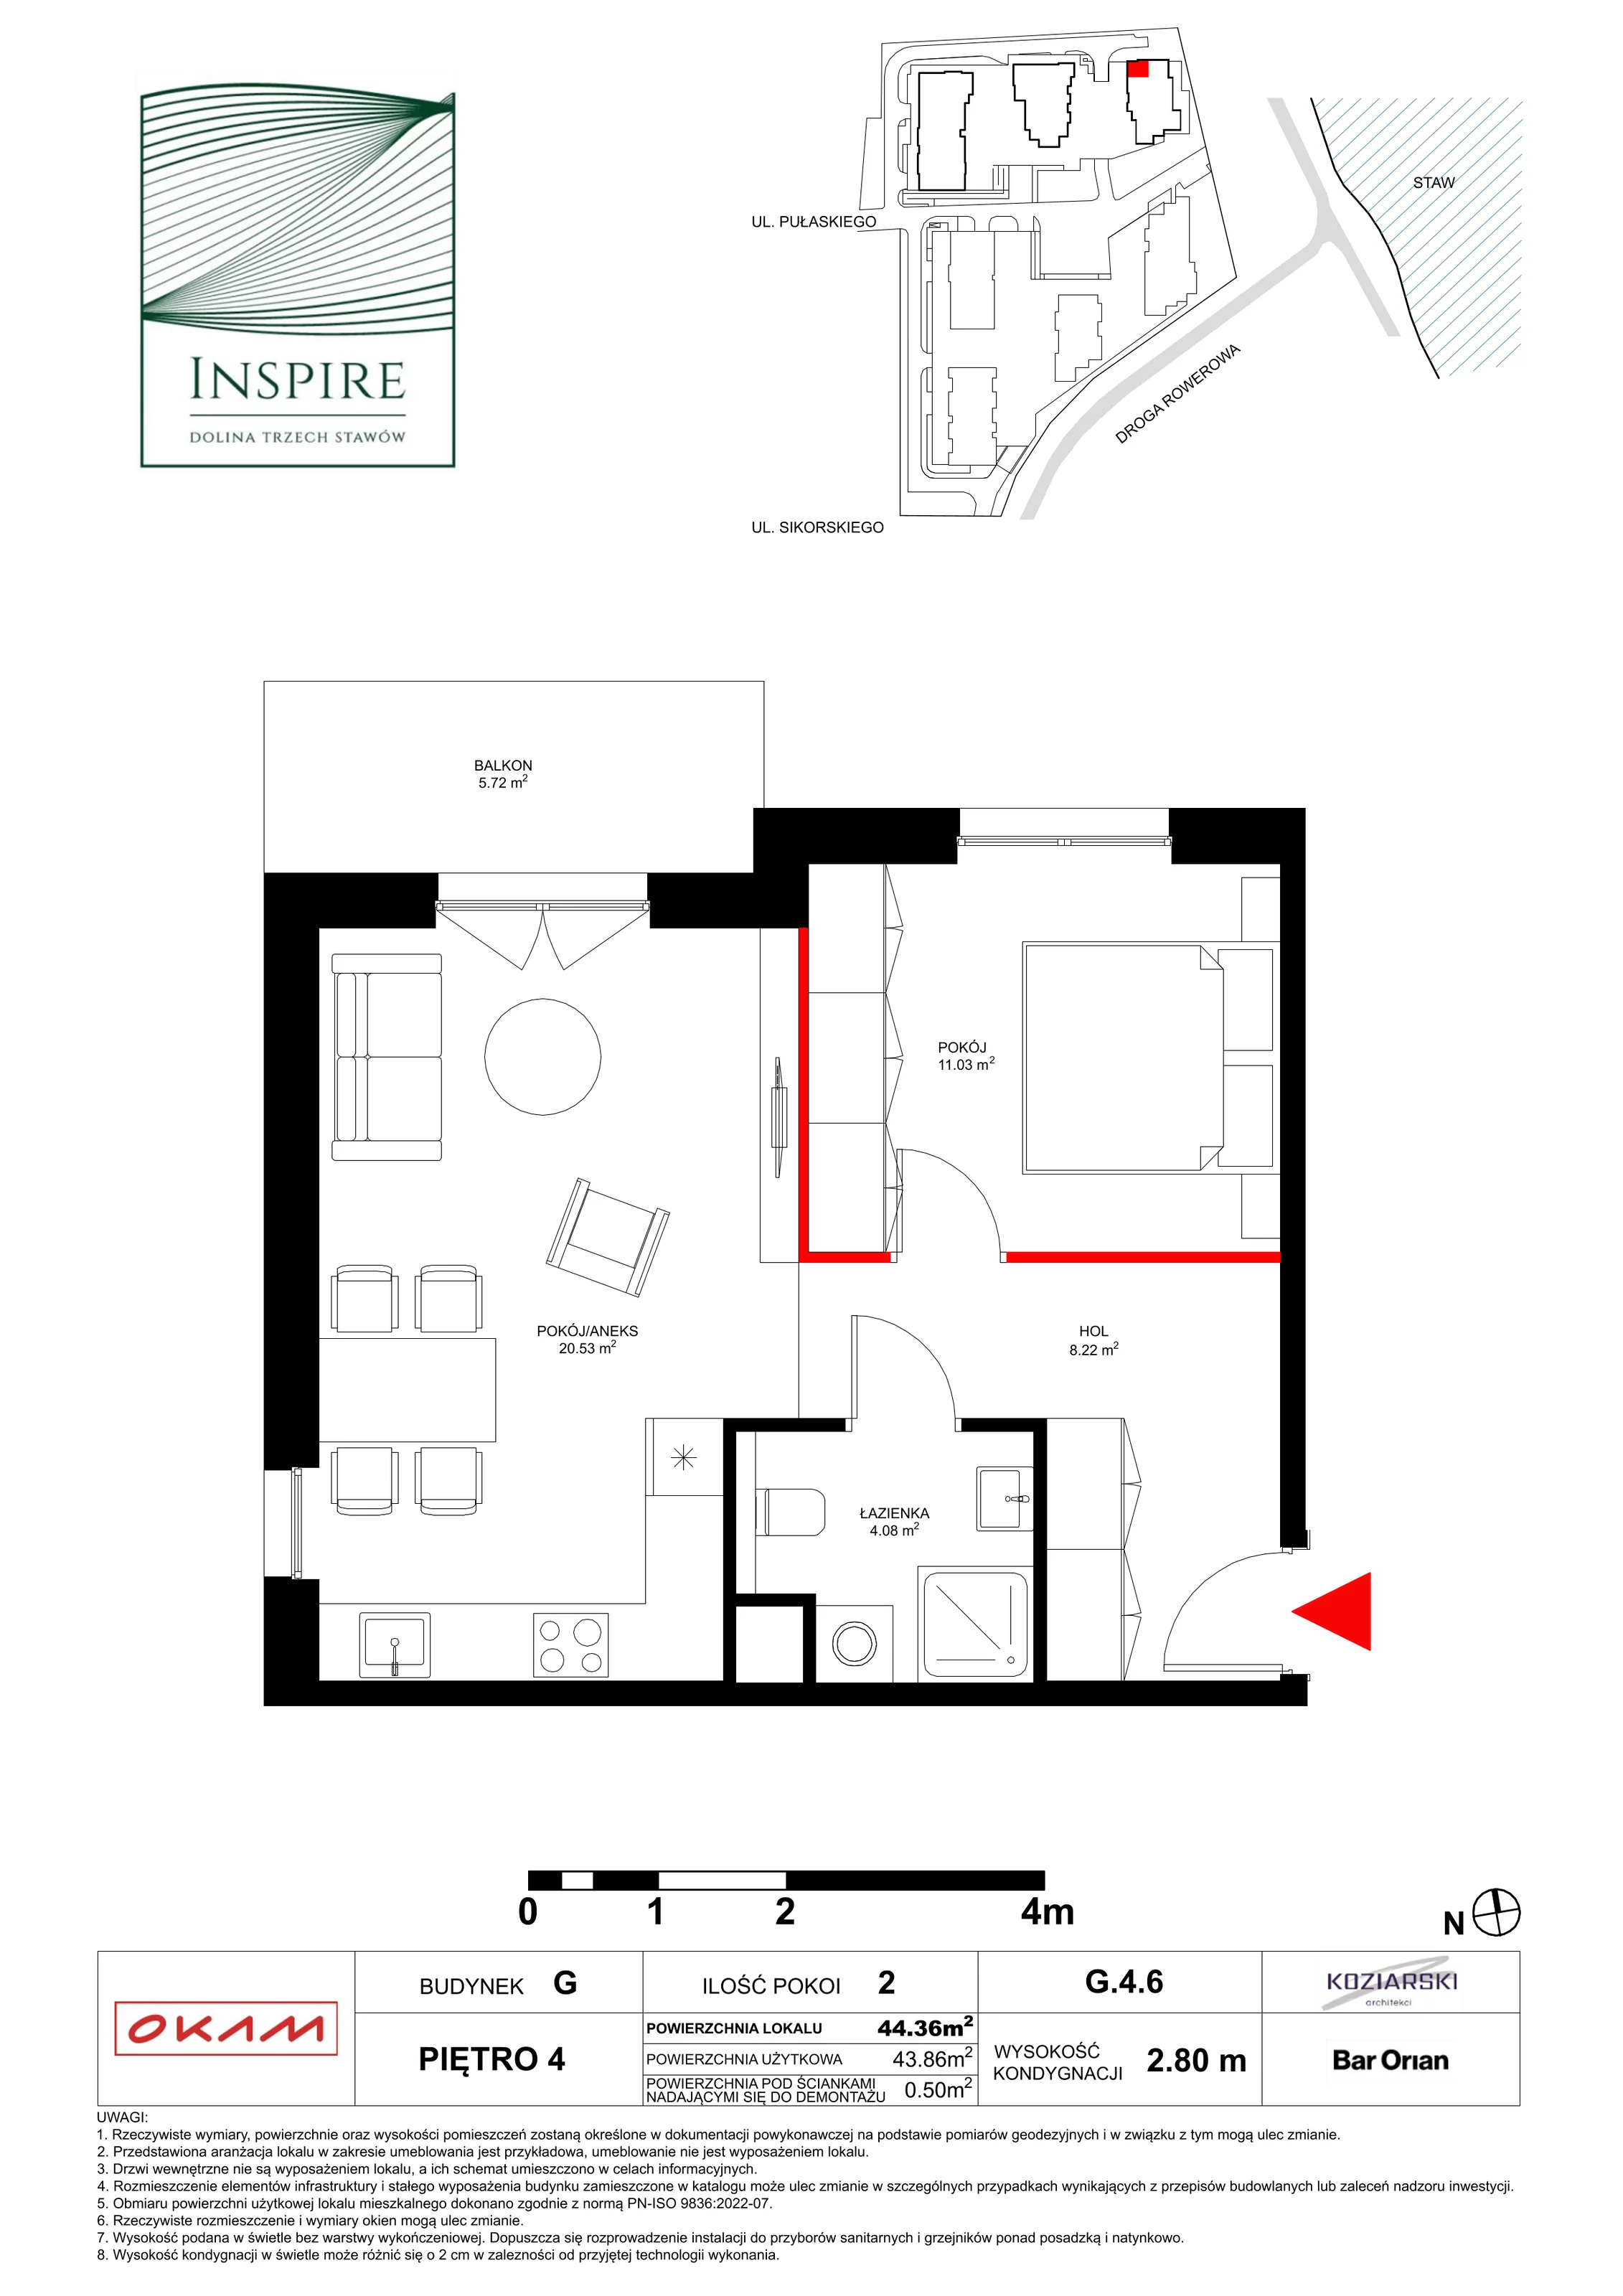 Apartament 43,61 m², piętro 4, oferta nr G.4.6, Inspire, Katowice, Osiedle Paderewskiego-Muchowiec, Dolina Trzech Stawów, ul. gen. Sikorskiego 41